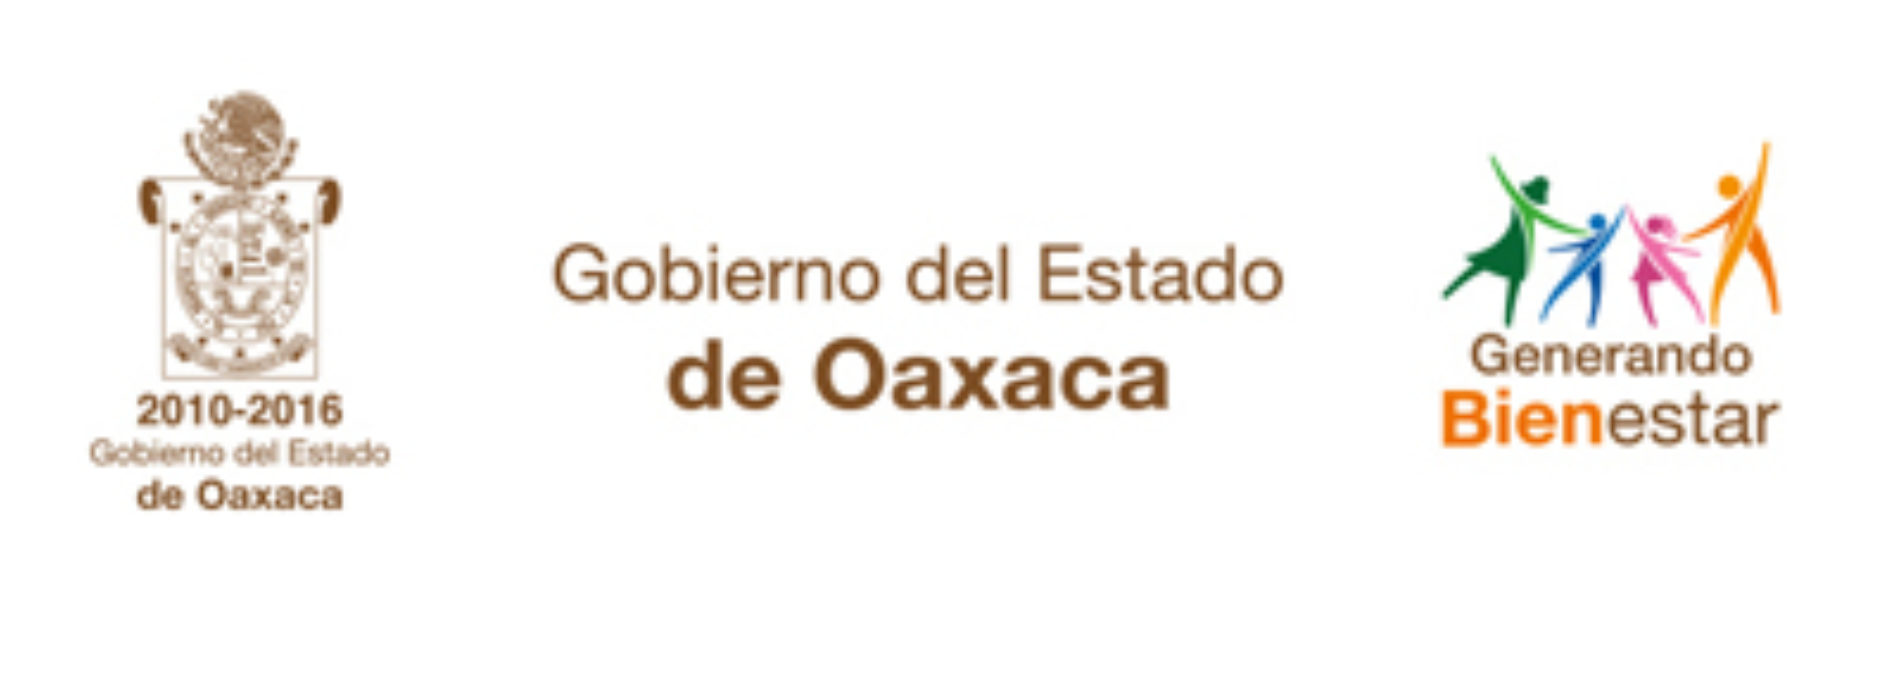 13 personas fallecidas en accidente carretero ocurrido en la Costa de Oaxaca